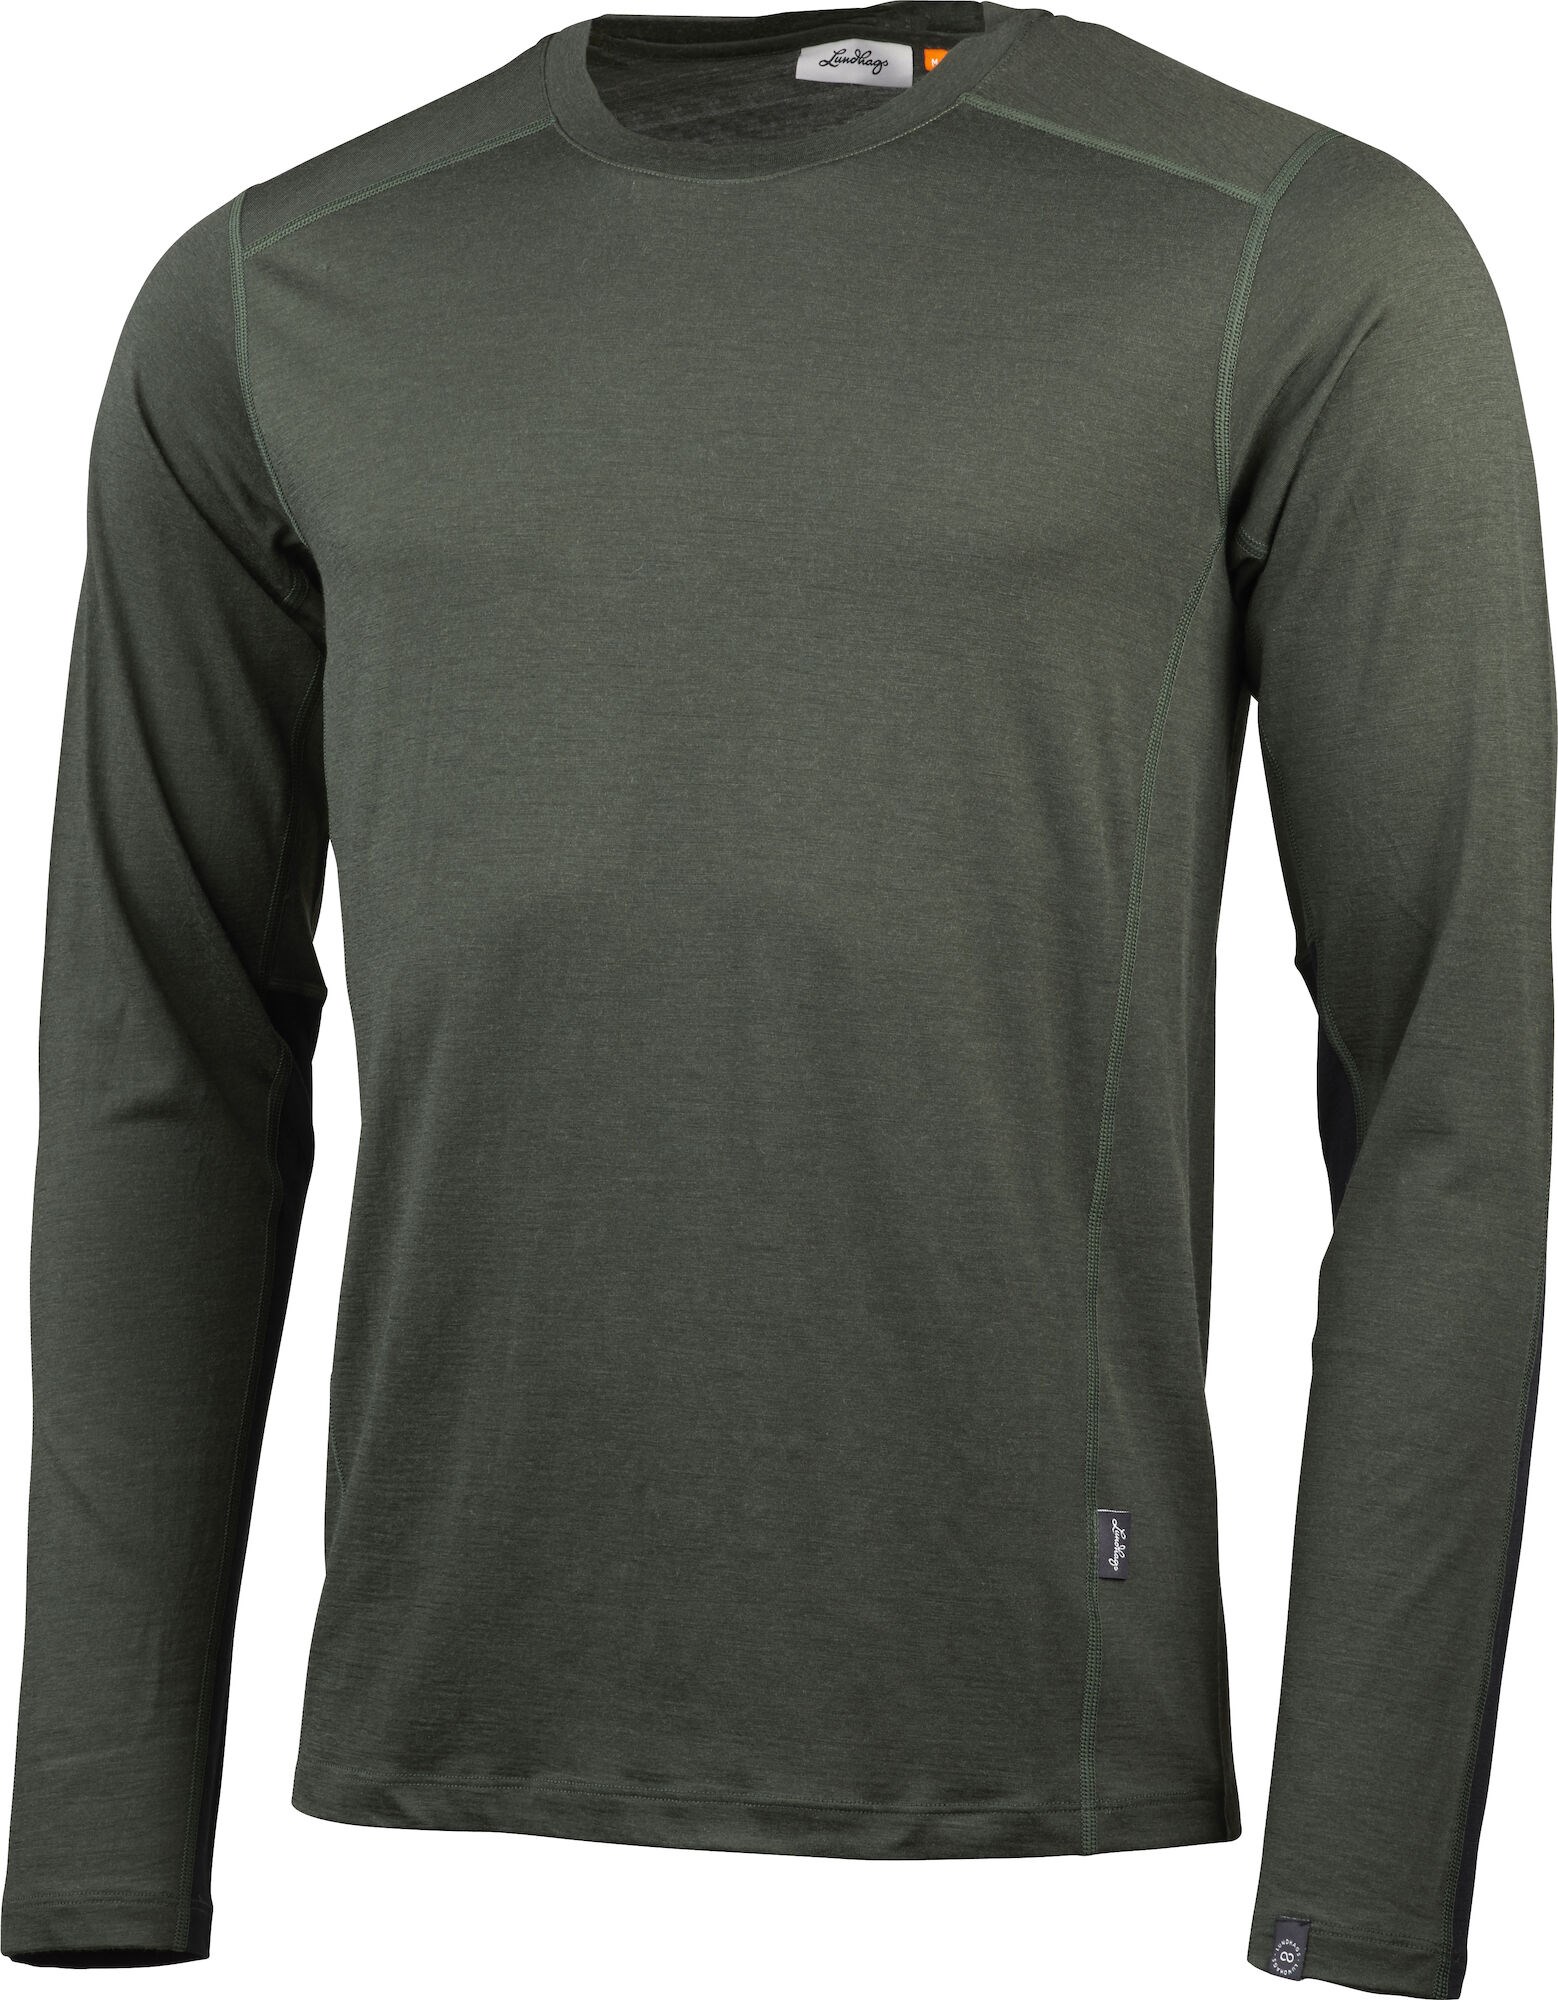 Fulu Merino Wool Long Sleeve T-shirt Men